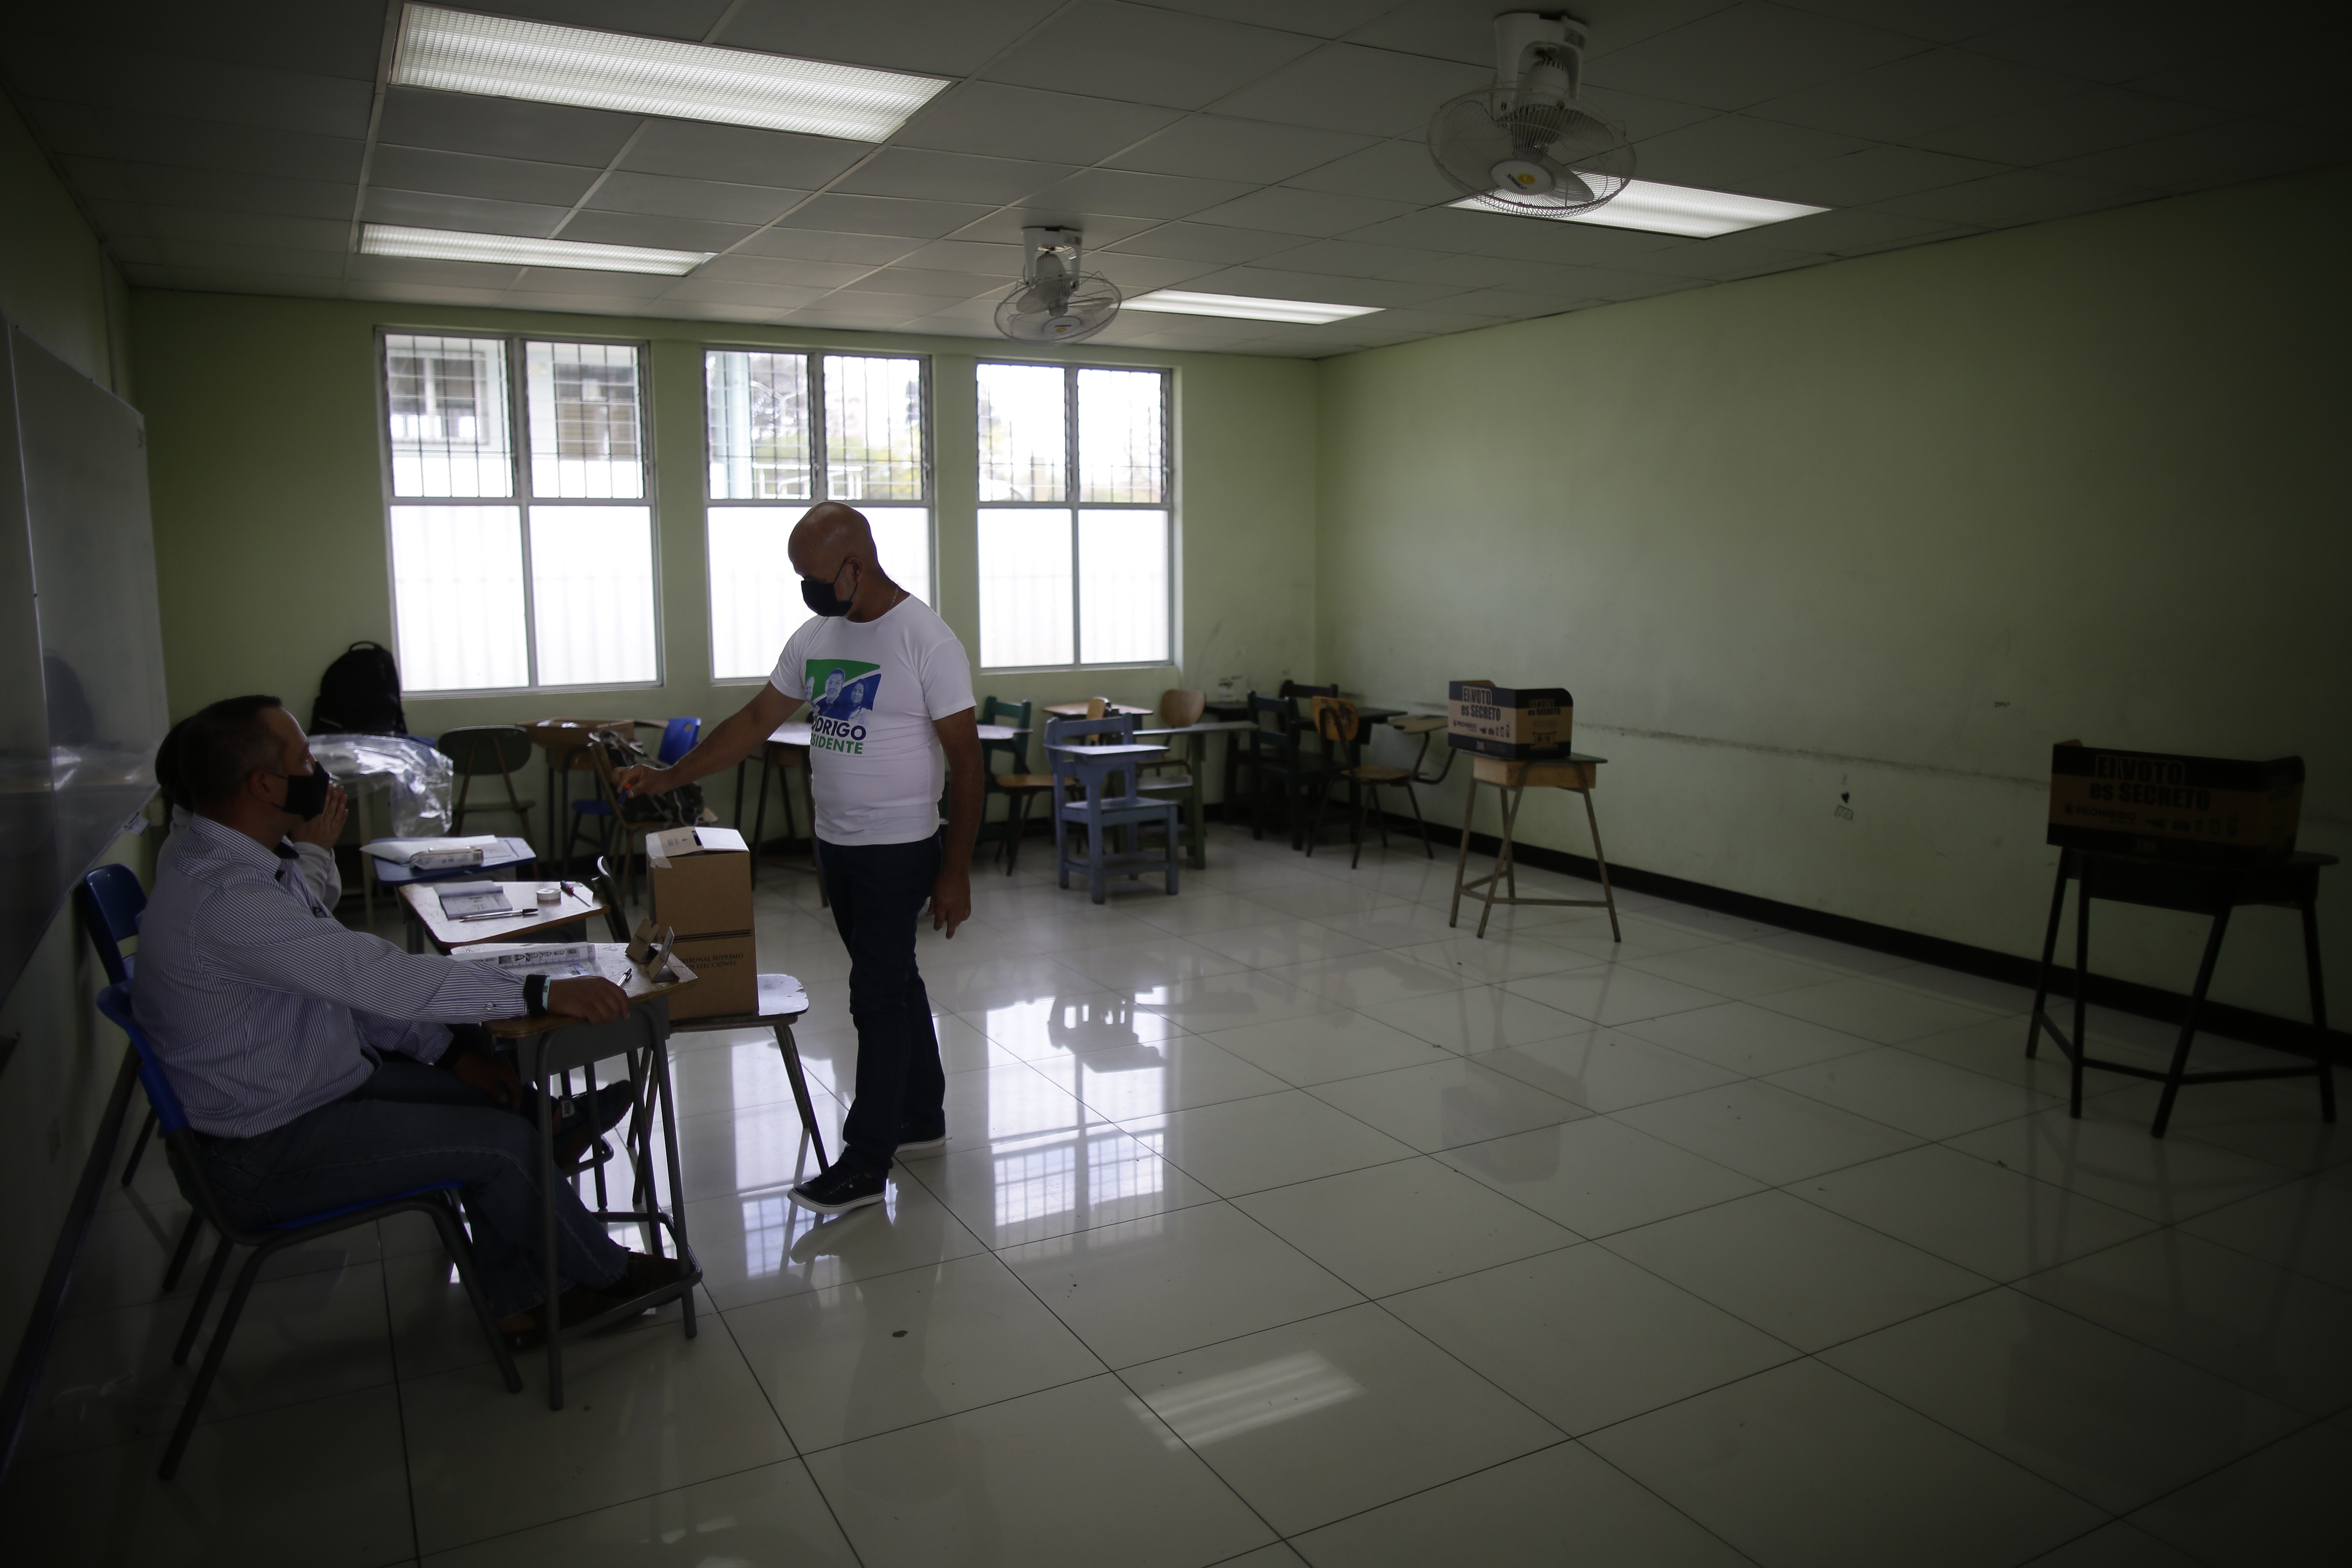 La jornada electoral transcurre con tranquilidad y sin incidentes en Costa Rica este #3Abr (FOTOS)